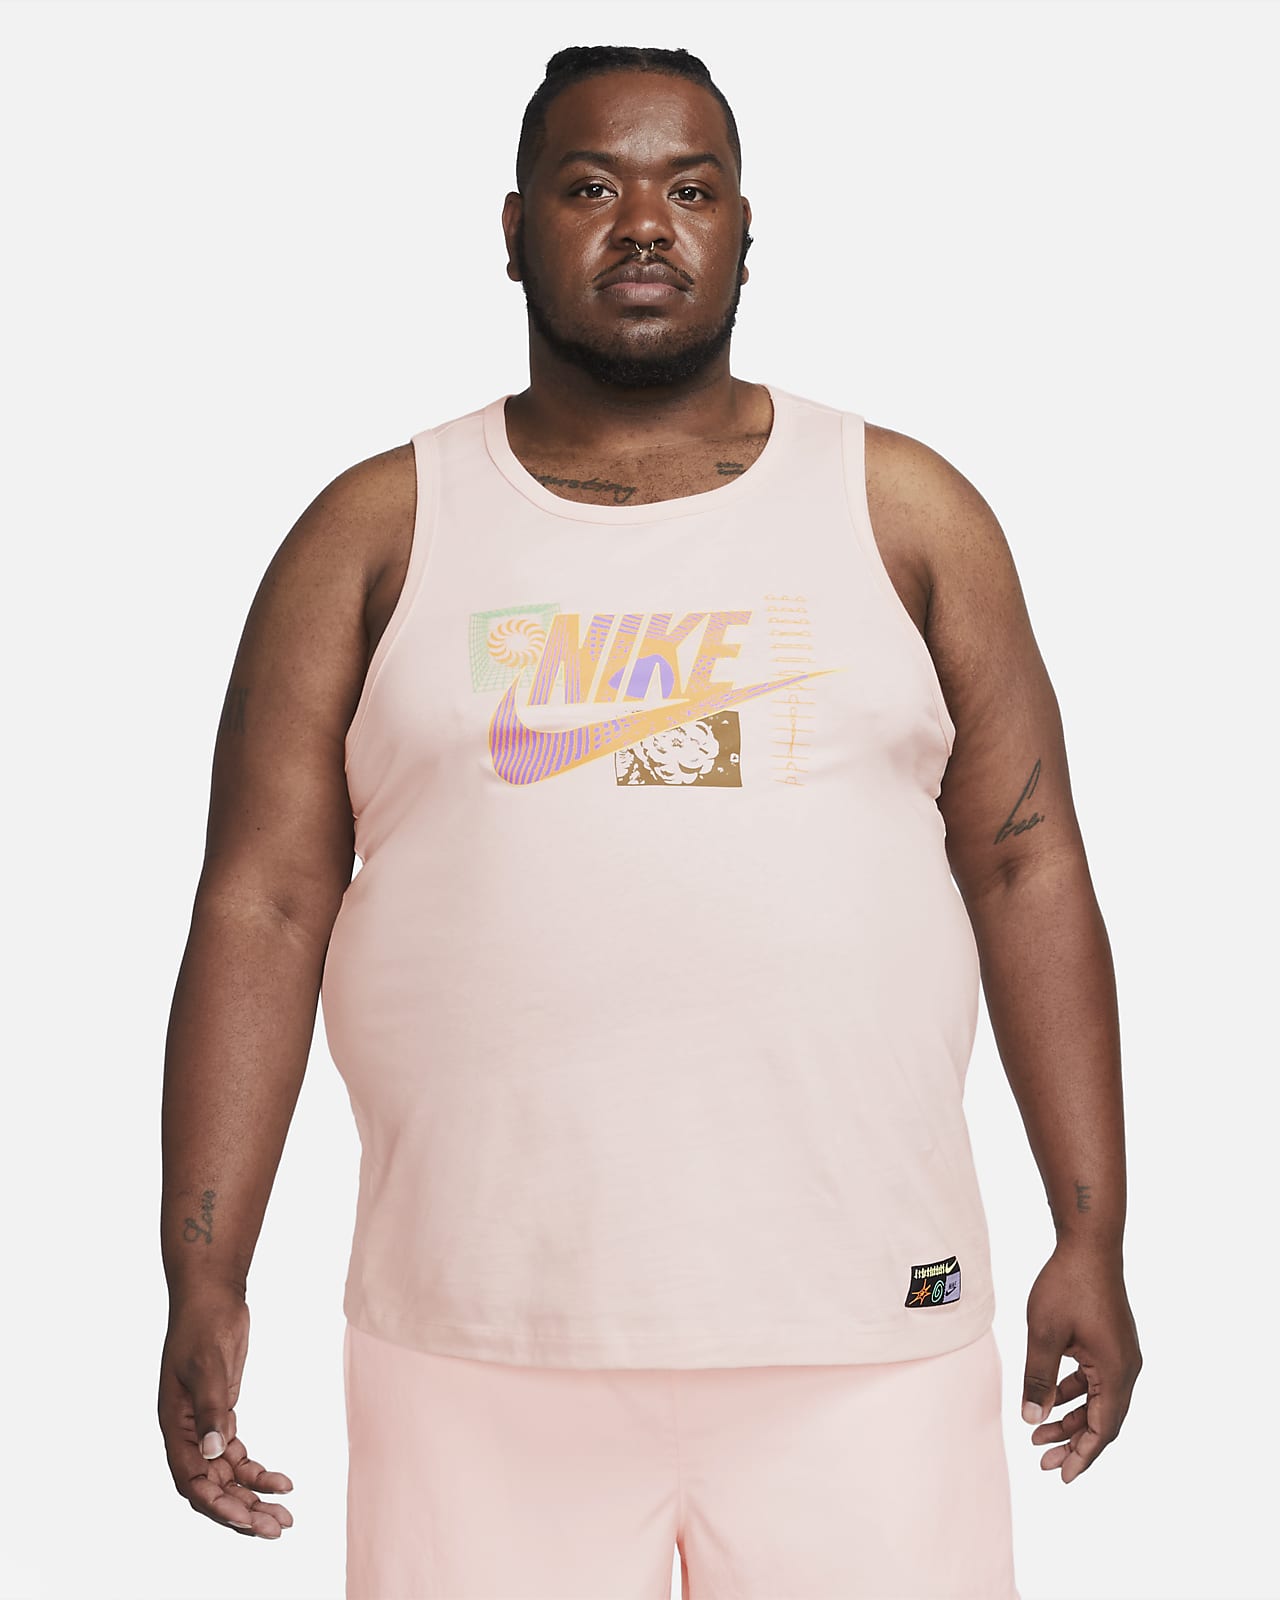 Nike Men's Tanktop Festival Muscle Tank Top Shirt Sleeveless Sportswear ALL  NIKE